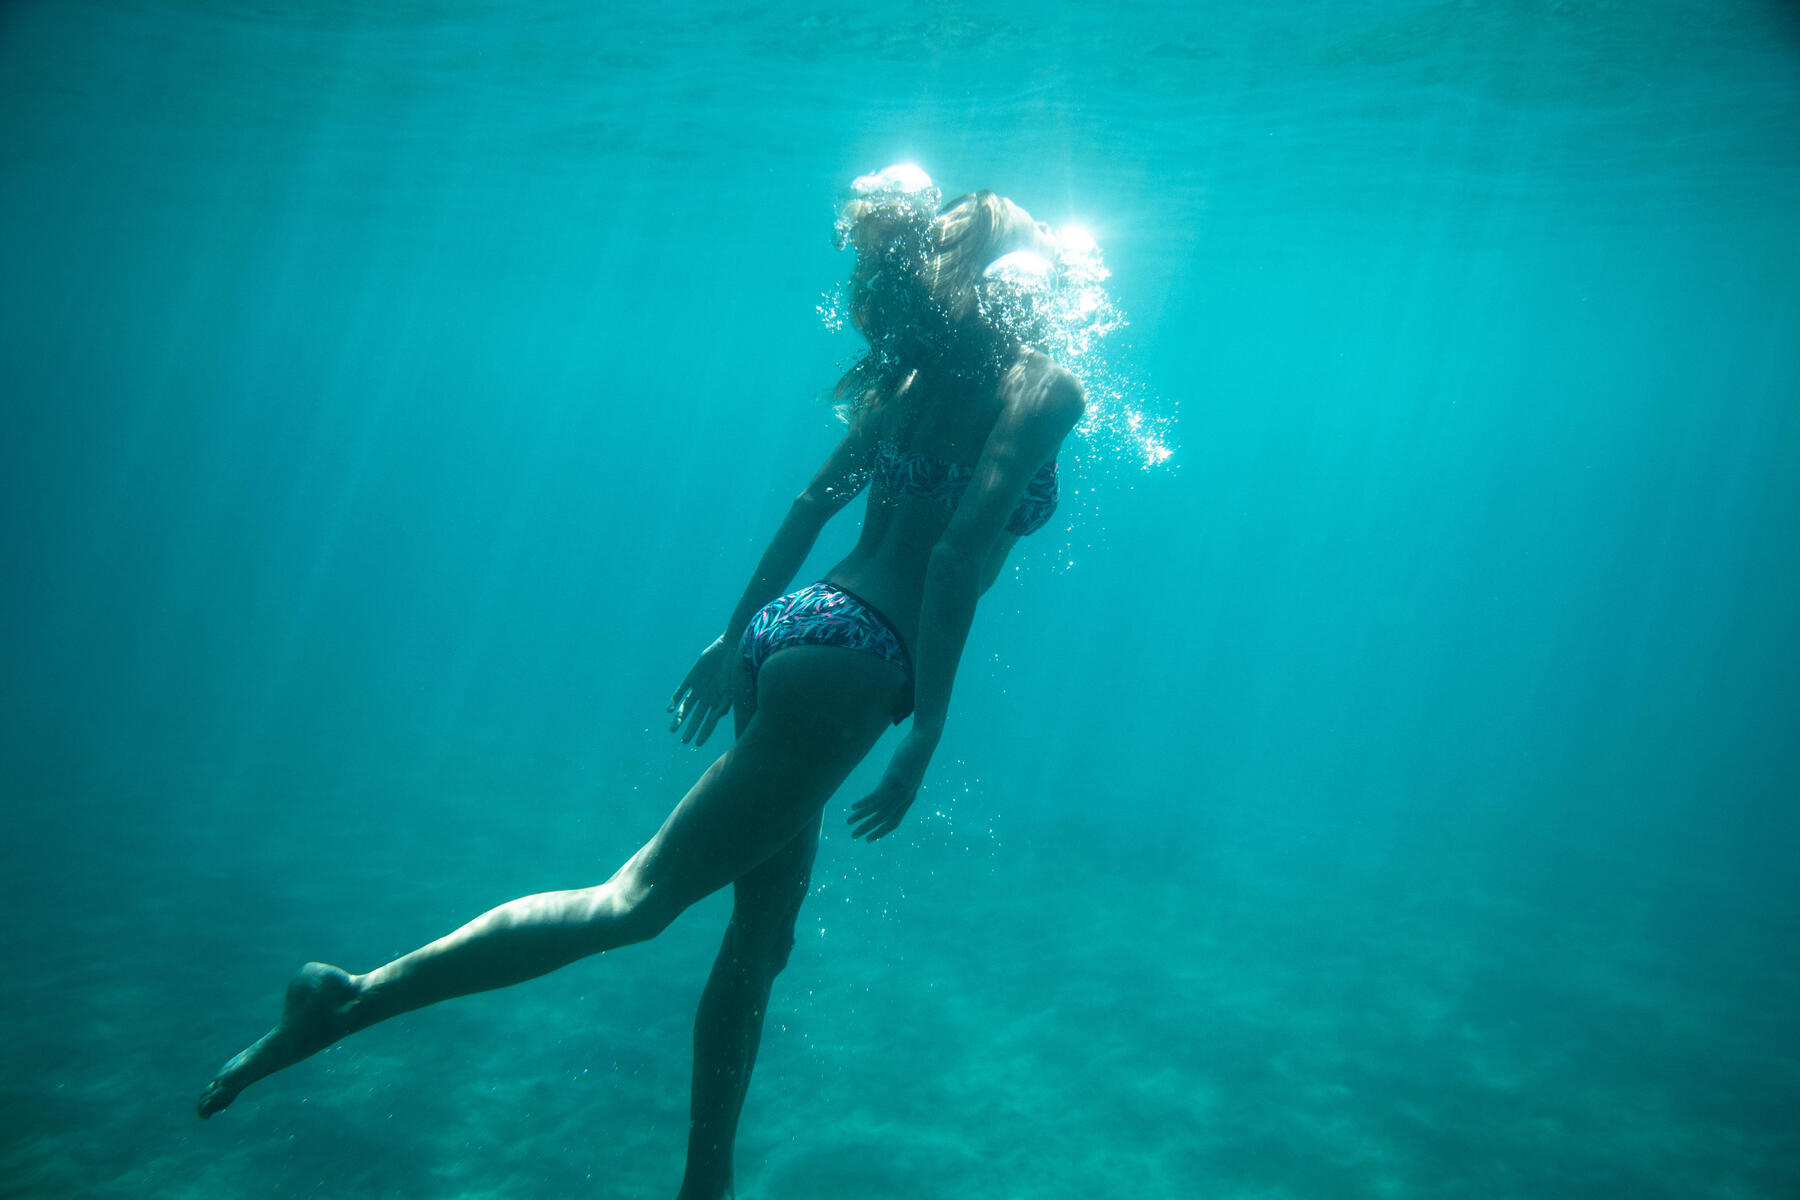 Olaian swimming in the sea with a surf bikini